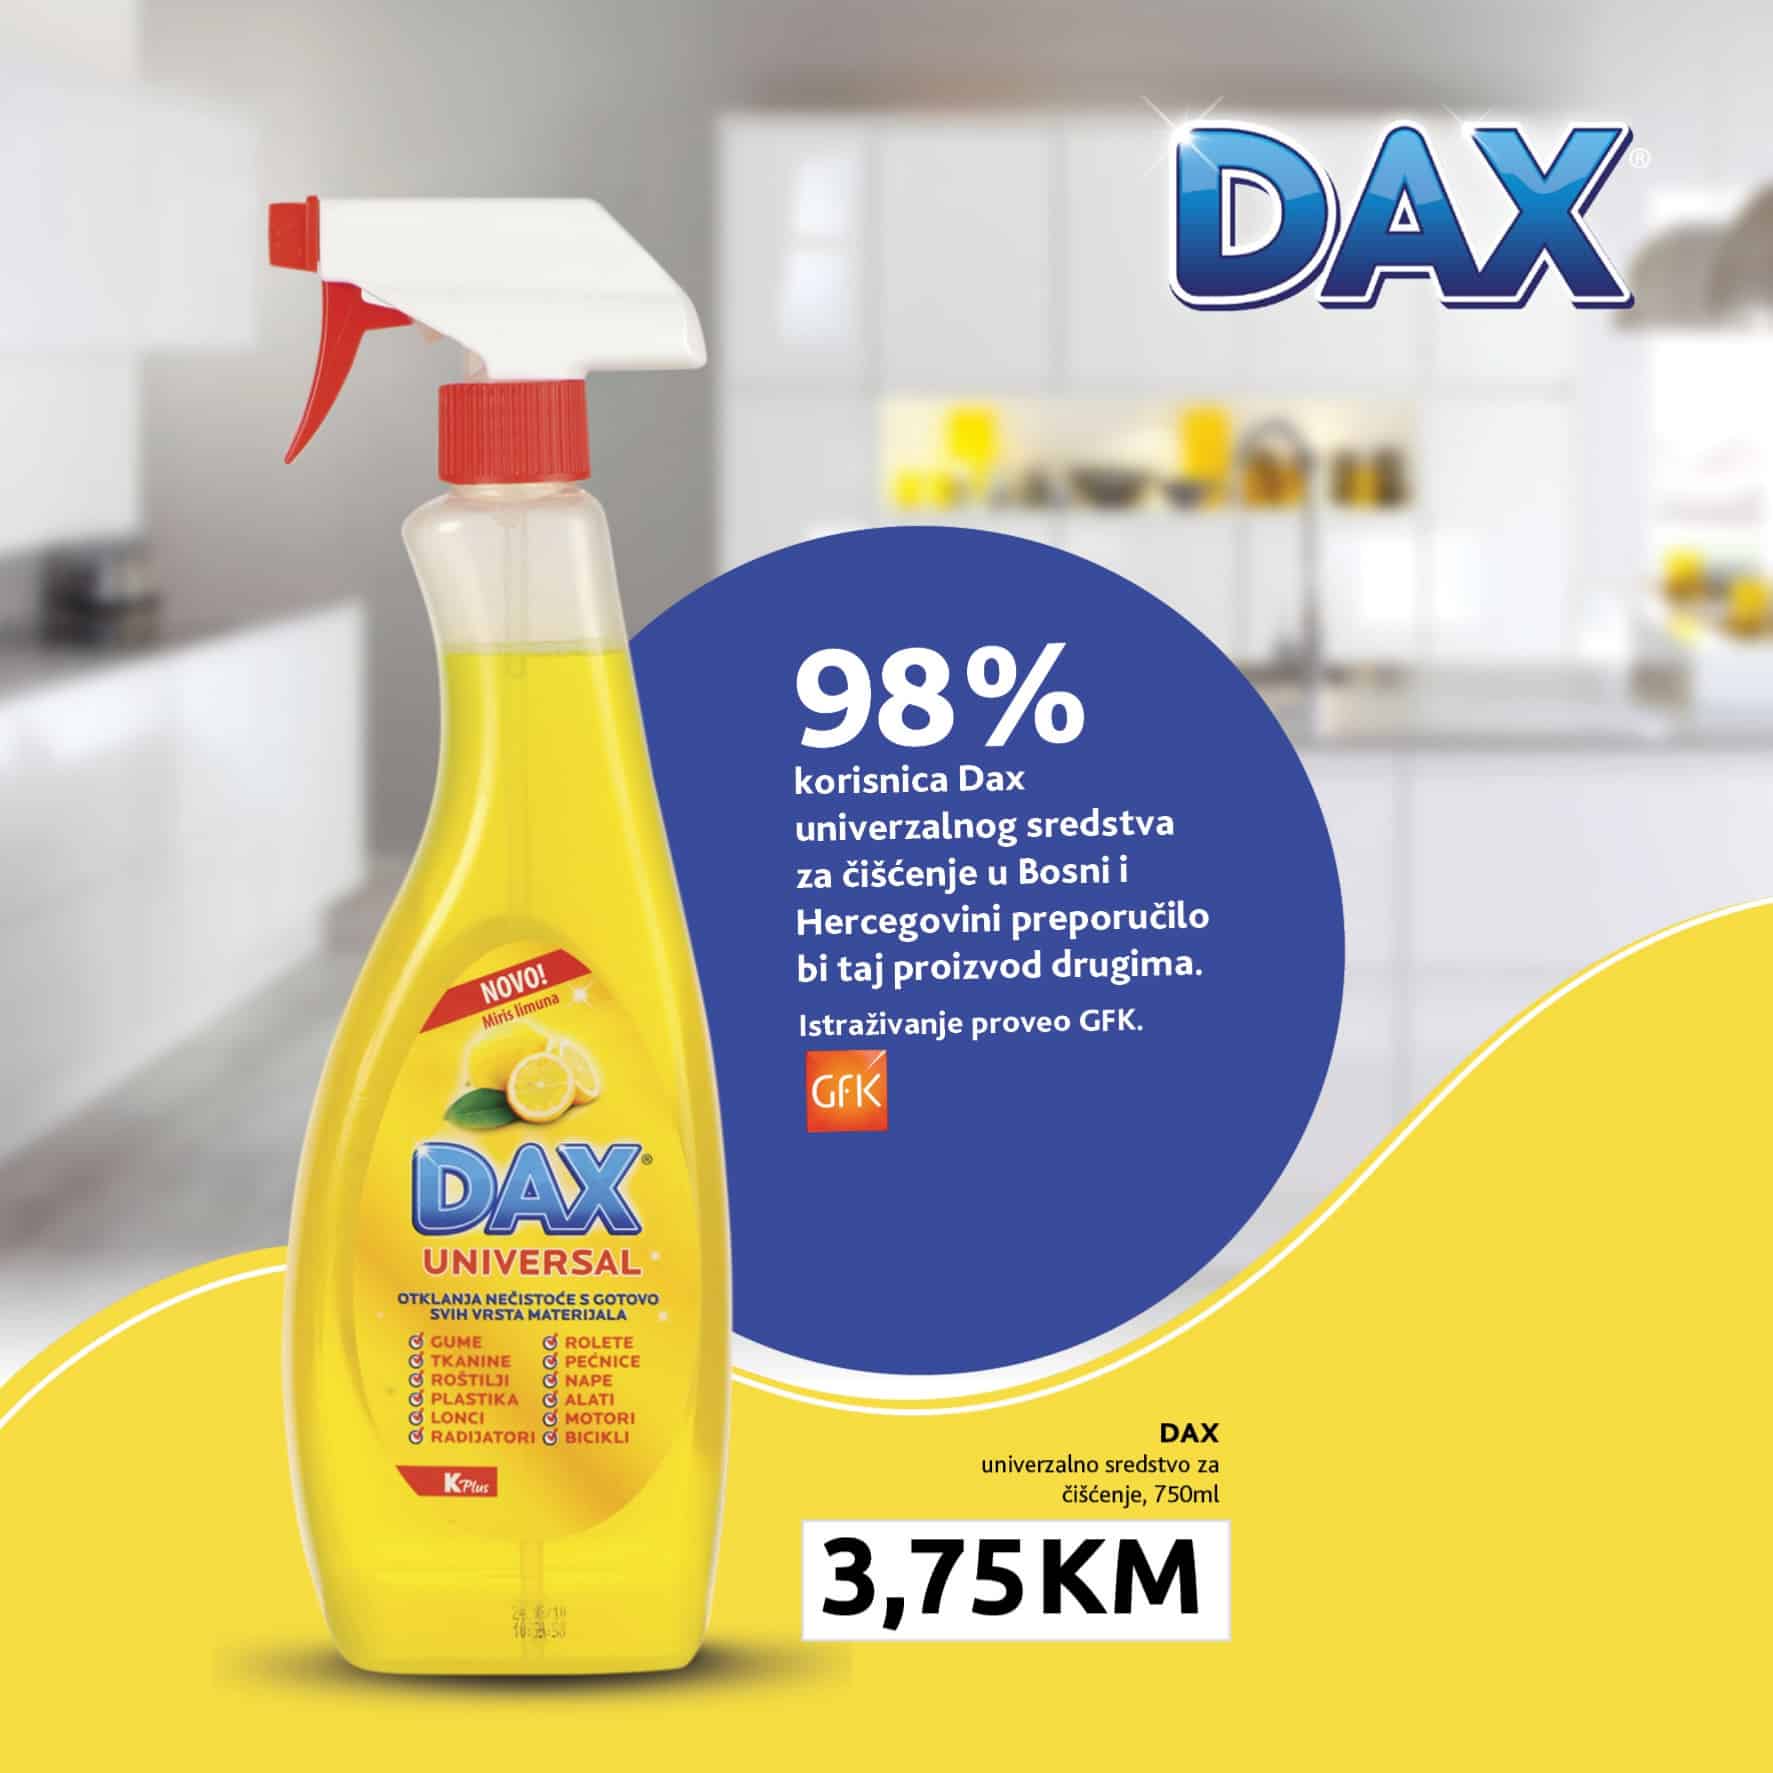 Konzum katalog donosi nam DAX proizvode po ackijskim sniženim cijenama!